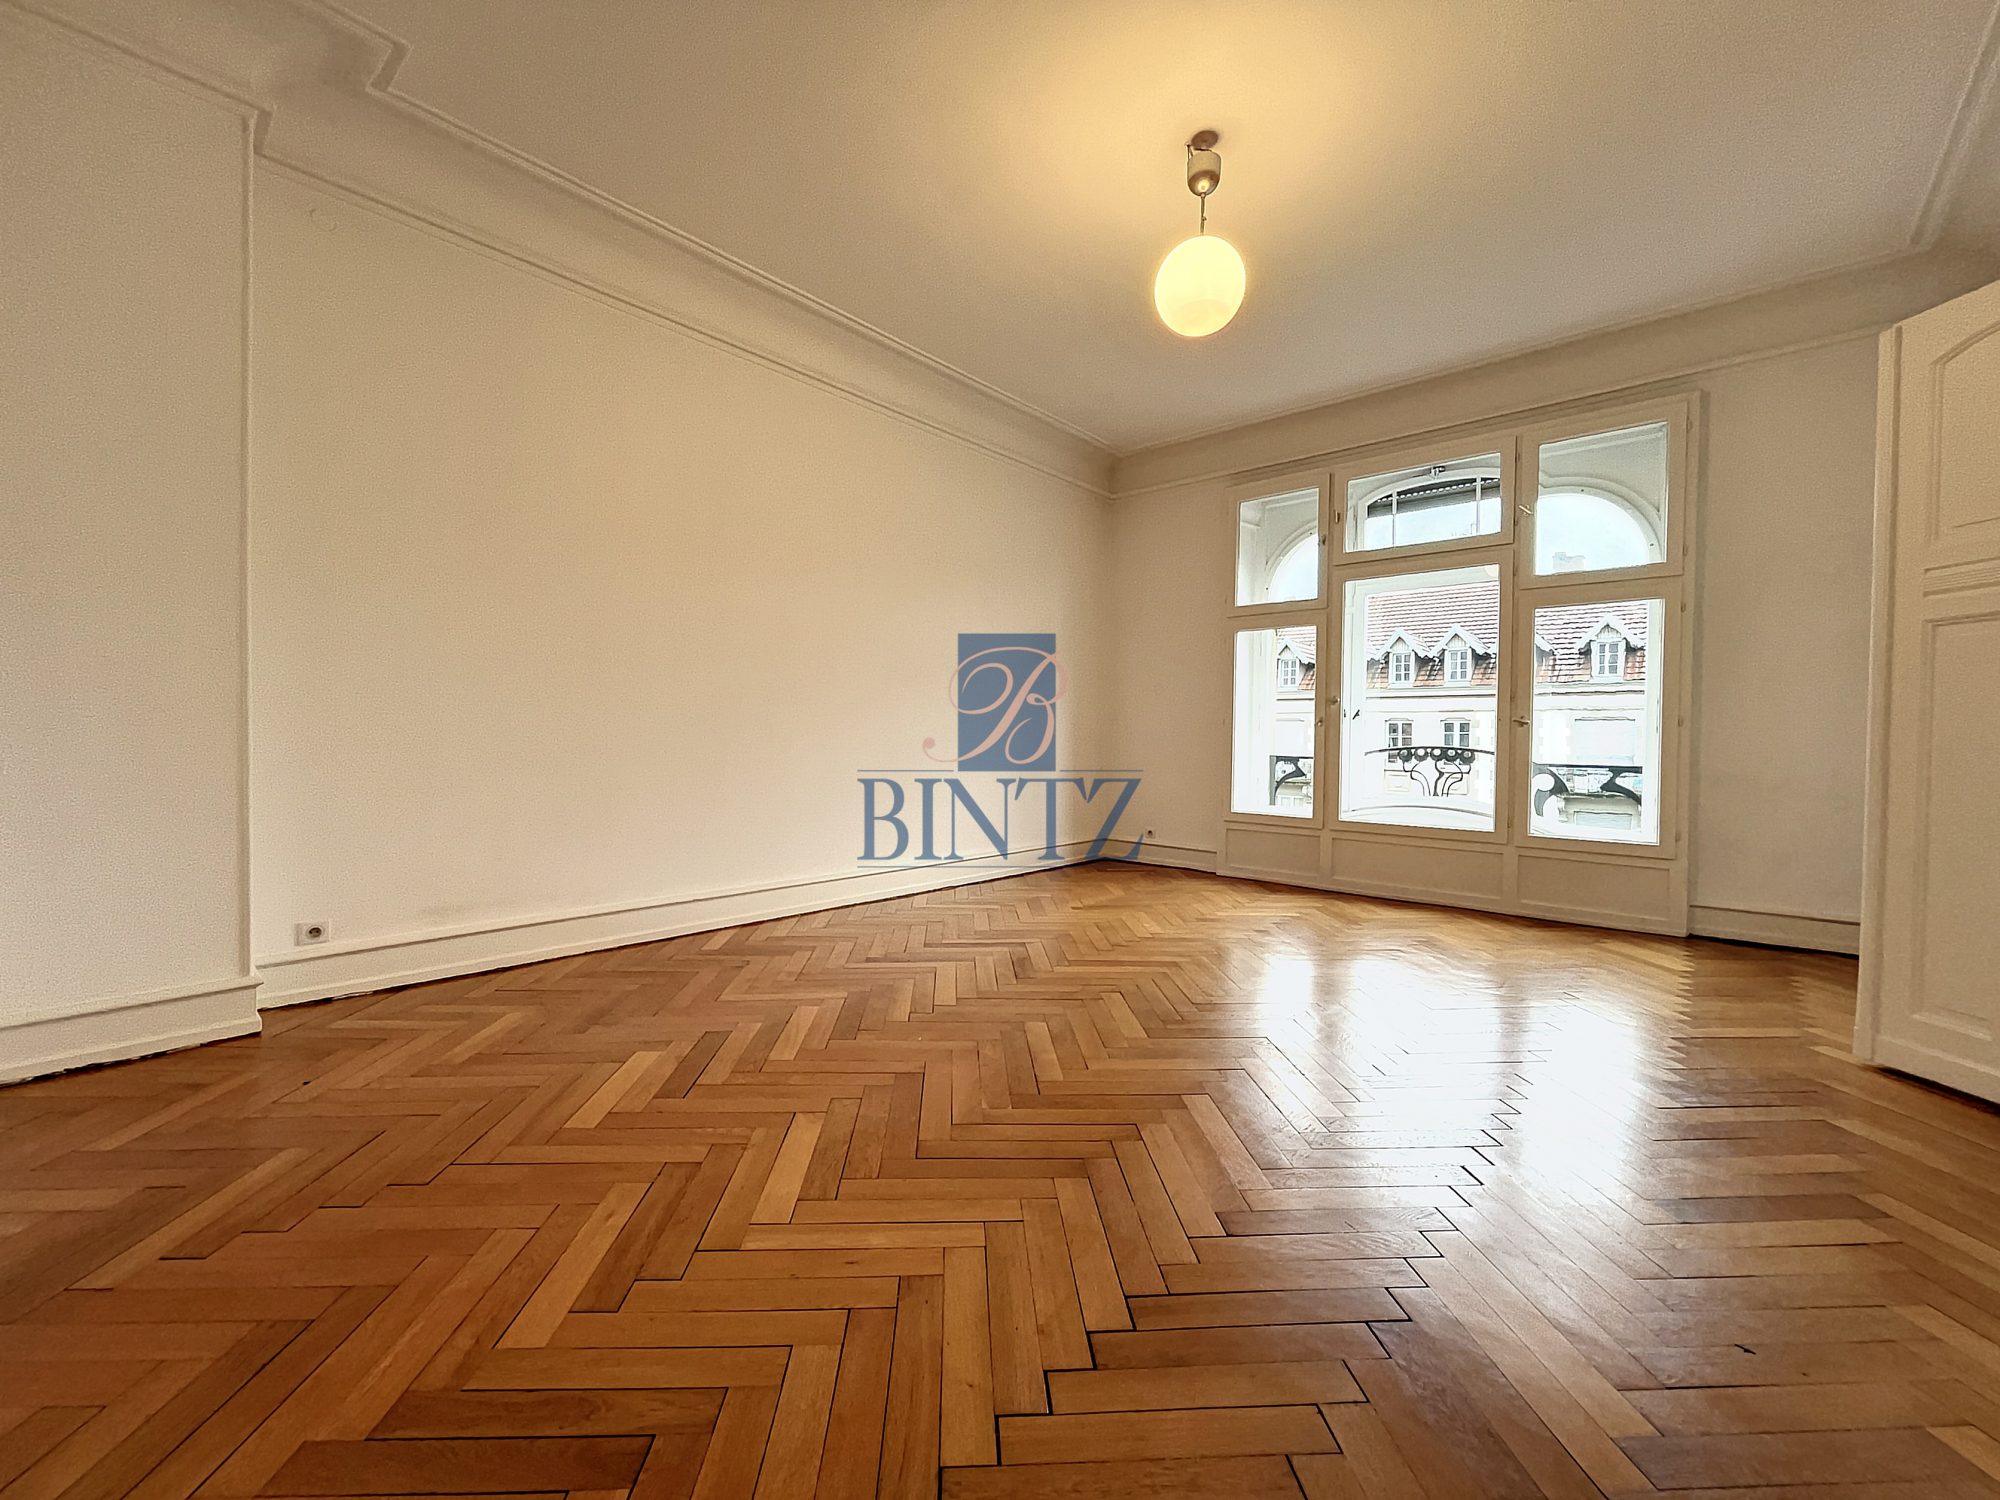 Exceptionnel 5 pièces avec balcon - location appartement Strasbourg - Bintz Immobilier - 10